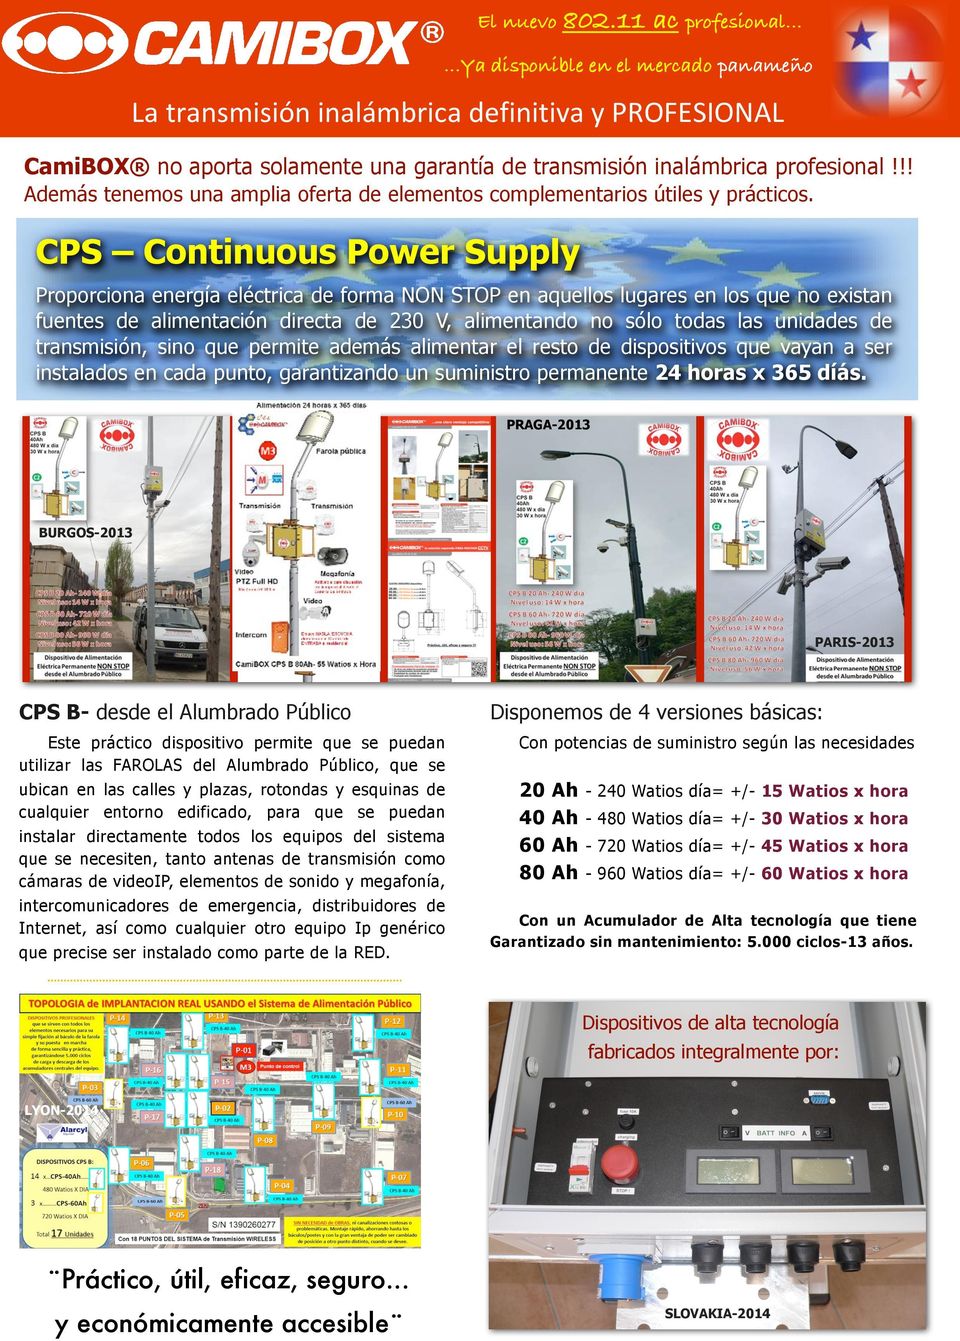 CPS Continuous Power Supply Proporciona energía eléctrica de forma NON STOP en aquellos lugares en los que no existan fuentes de alimentación directa de 230 V, alimentando no sólo todas las unidades